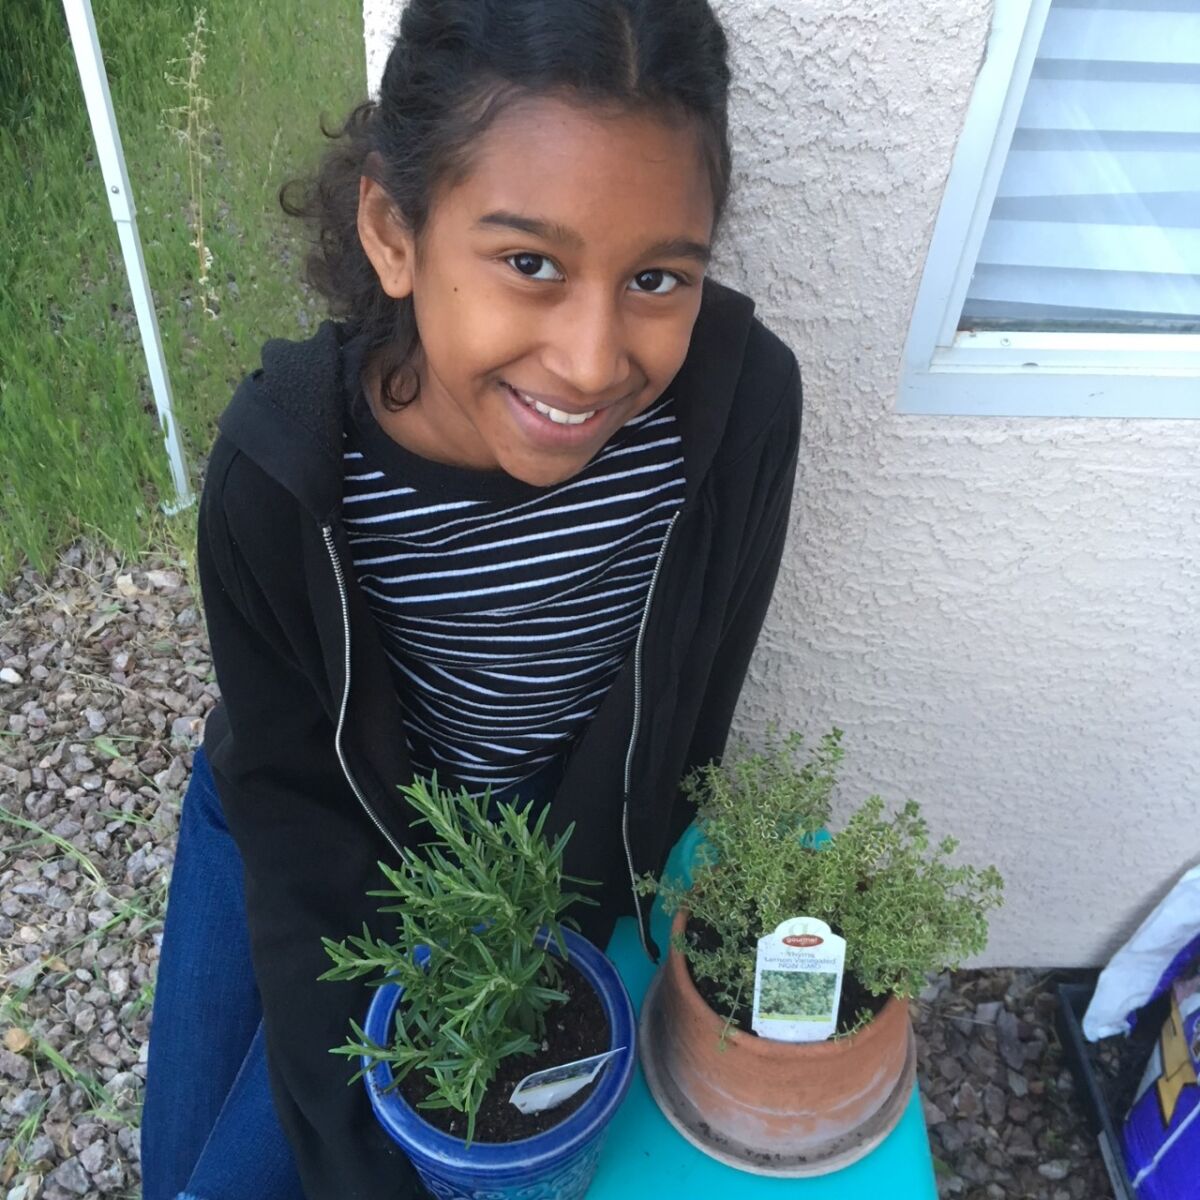 Kumei Norwood, 11, of Los Vegas tends to plants in her garden as part of her homeschooling activities.